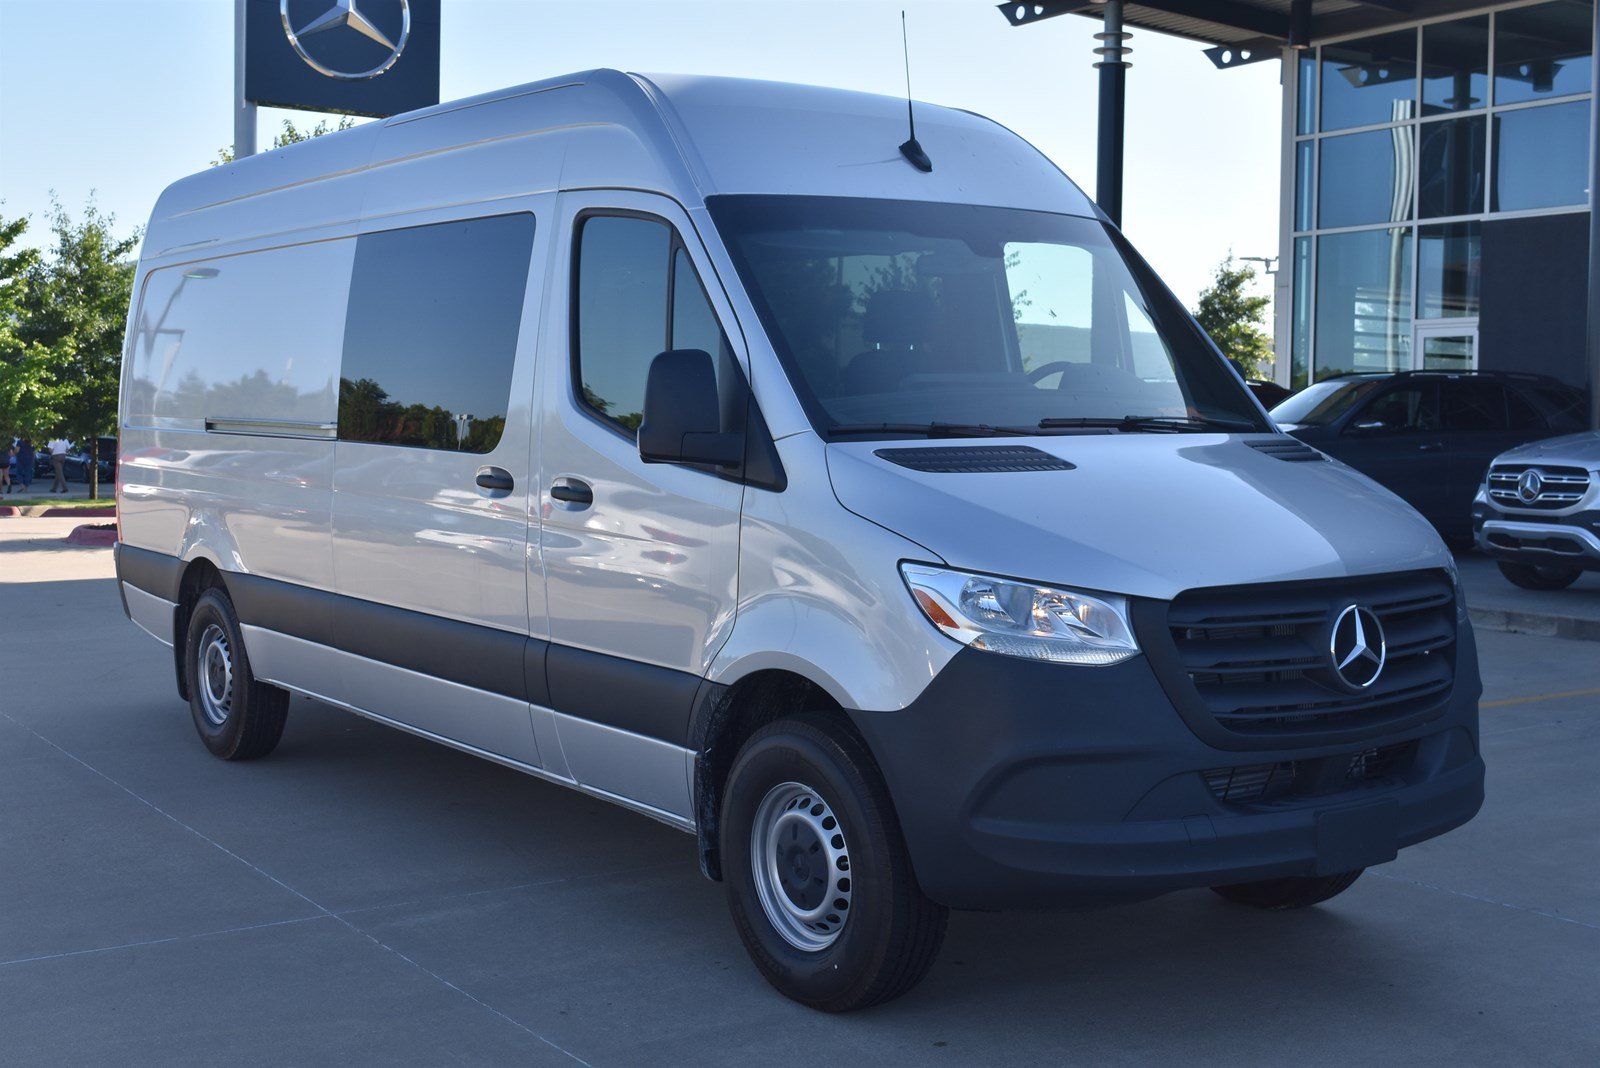 New 2019 Mercedes Benz Sprinter Crew Van Rwd Full Size Cargo Van